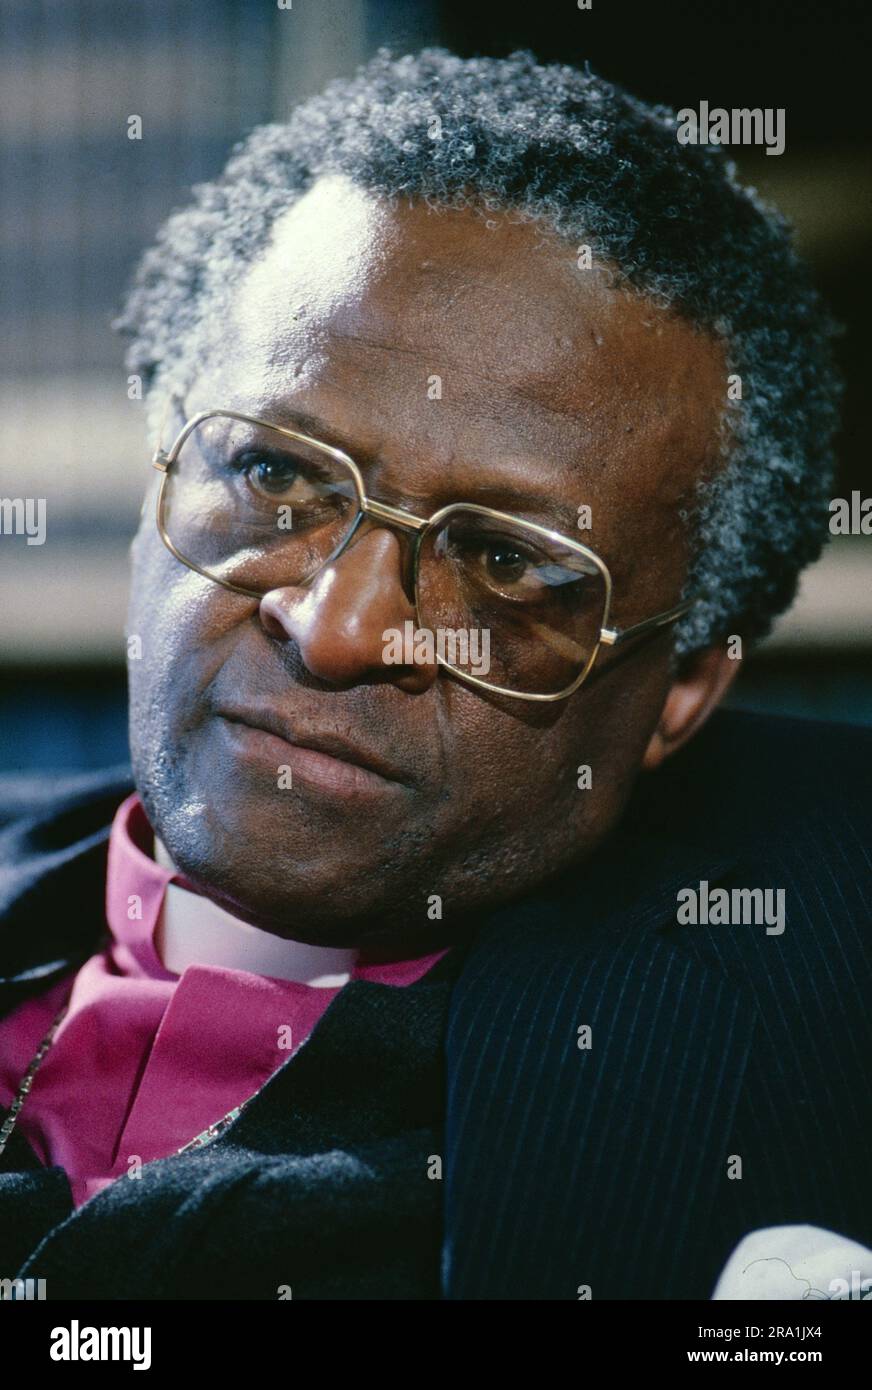 Desmond Tuto, auch Bischof Desmond Tutu, südafrikanischer anglikanischer Geistlicher und Menschenrechtsaktivist, Friedensnobelpreisträger nel 1984, Ritratto, circa 1985. Foto Stock